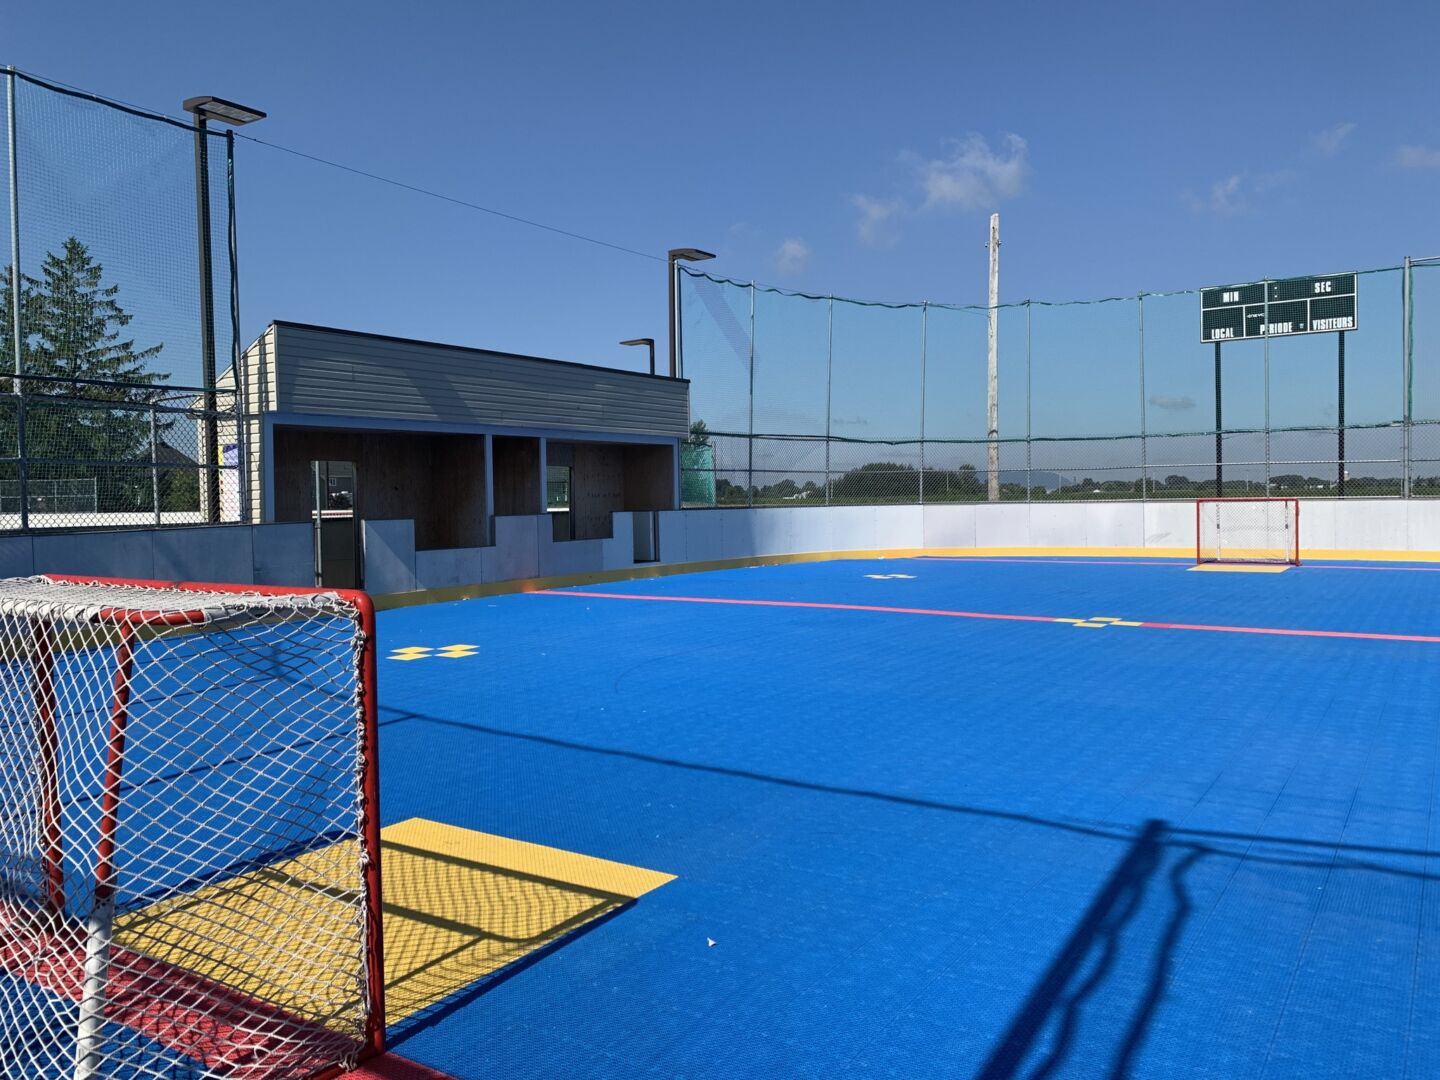 La Ville de Saint-Pie a lancé un appel d’offres pour l’aménagement d’une surface de dek hockey. Photo gracieuseté